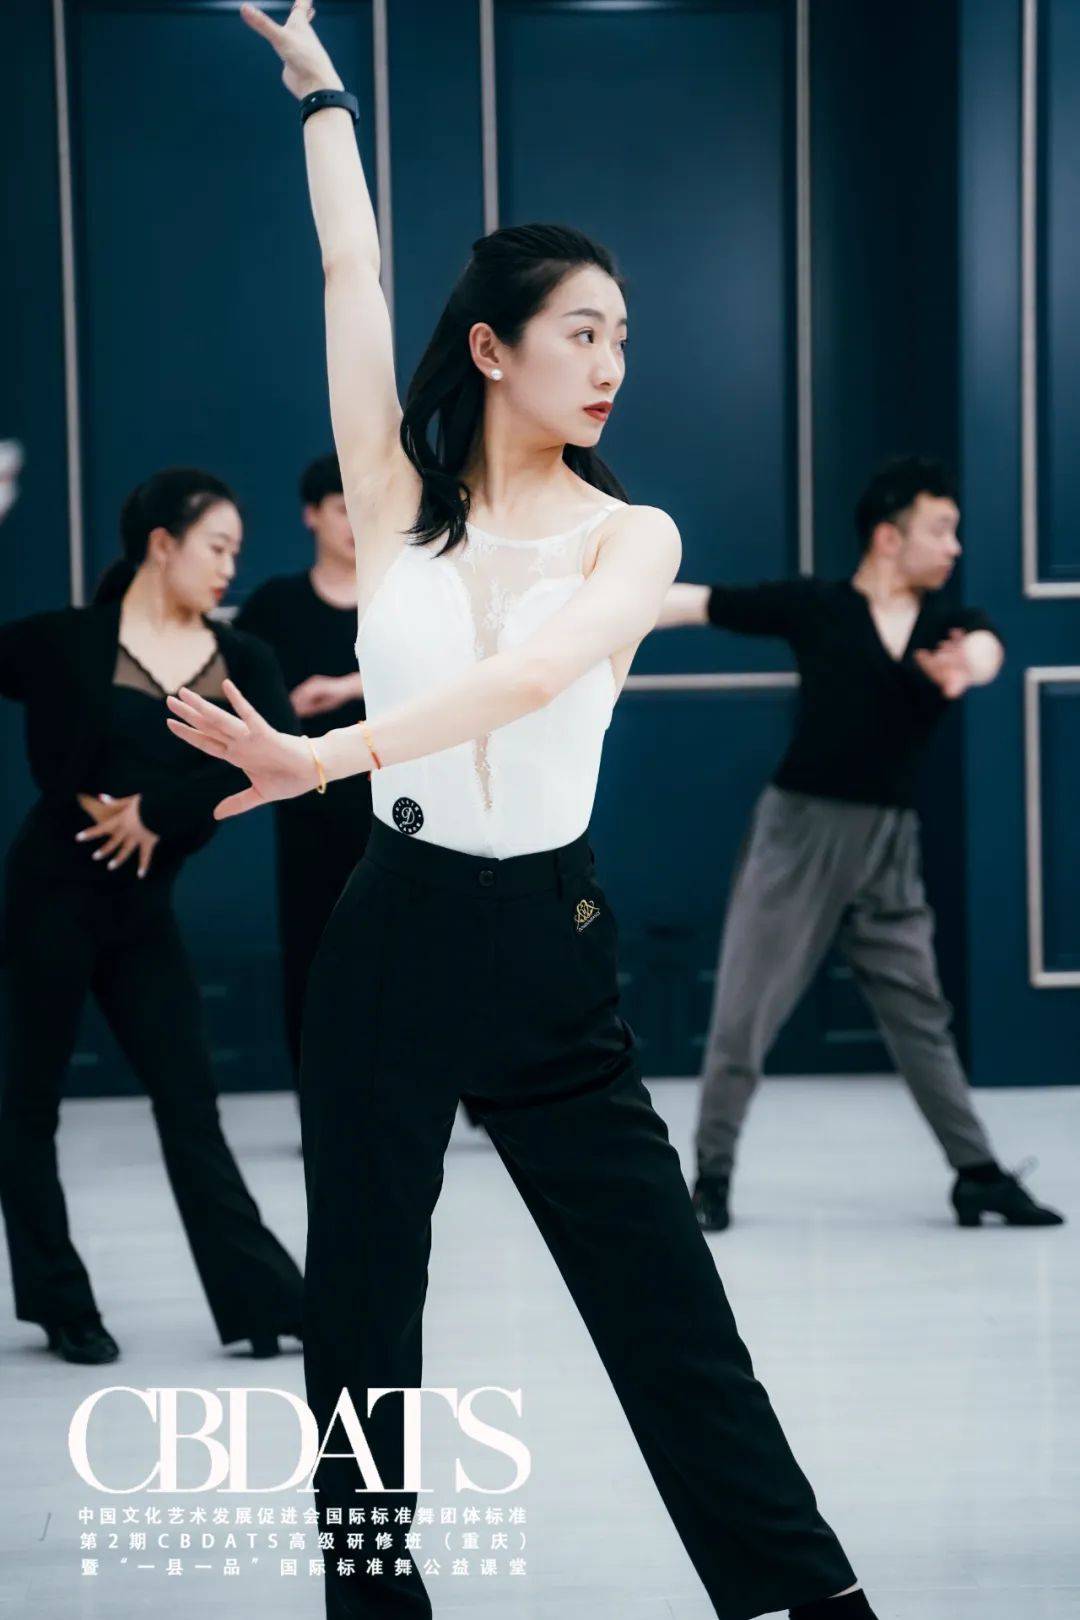 【认证培训】中国文化艺术发展促进会国际标准舞团体标准第23期cbdats